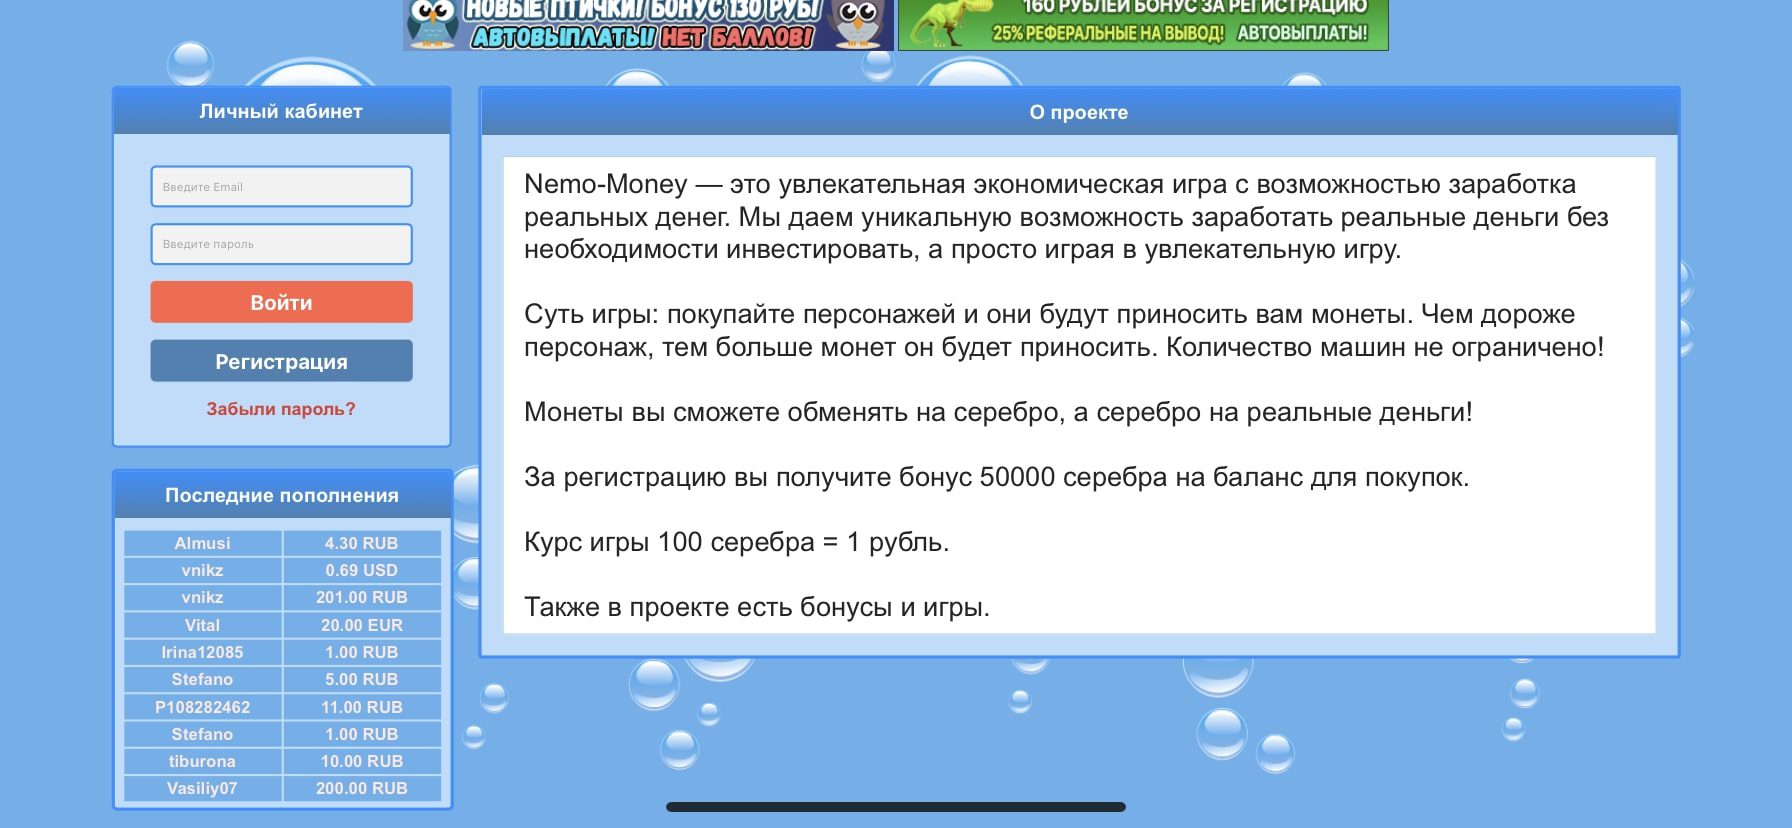 S1 Nemo Money сайт